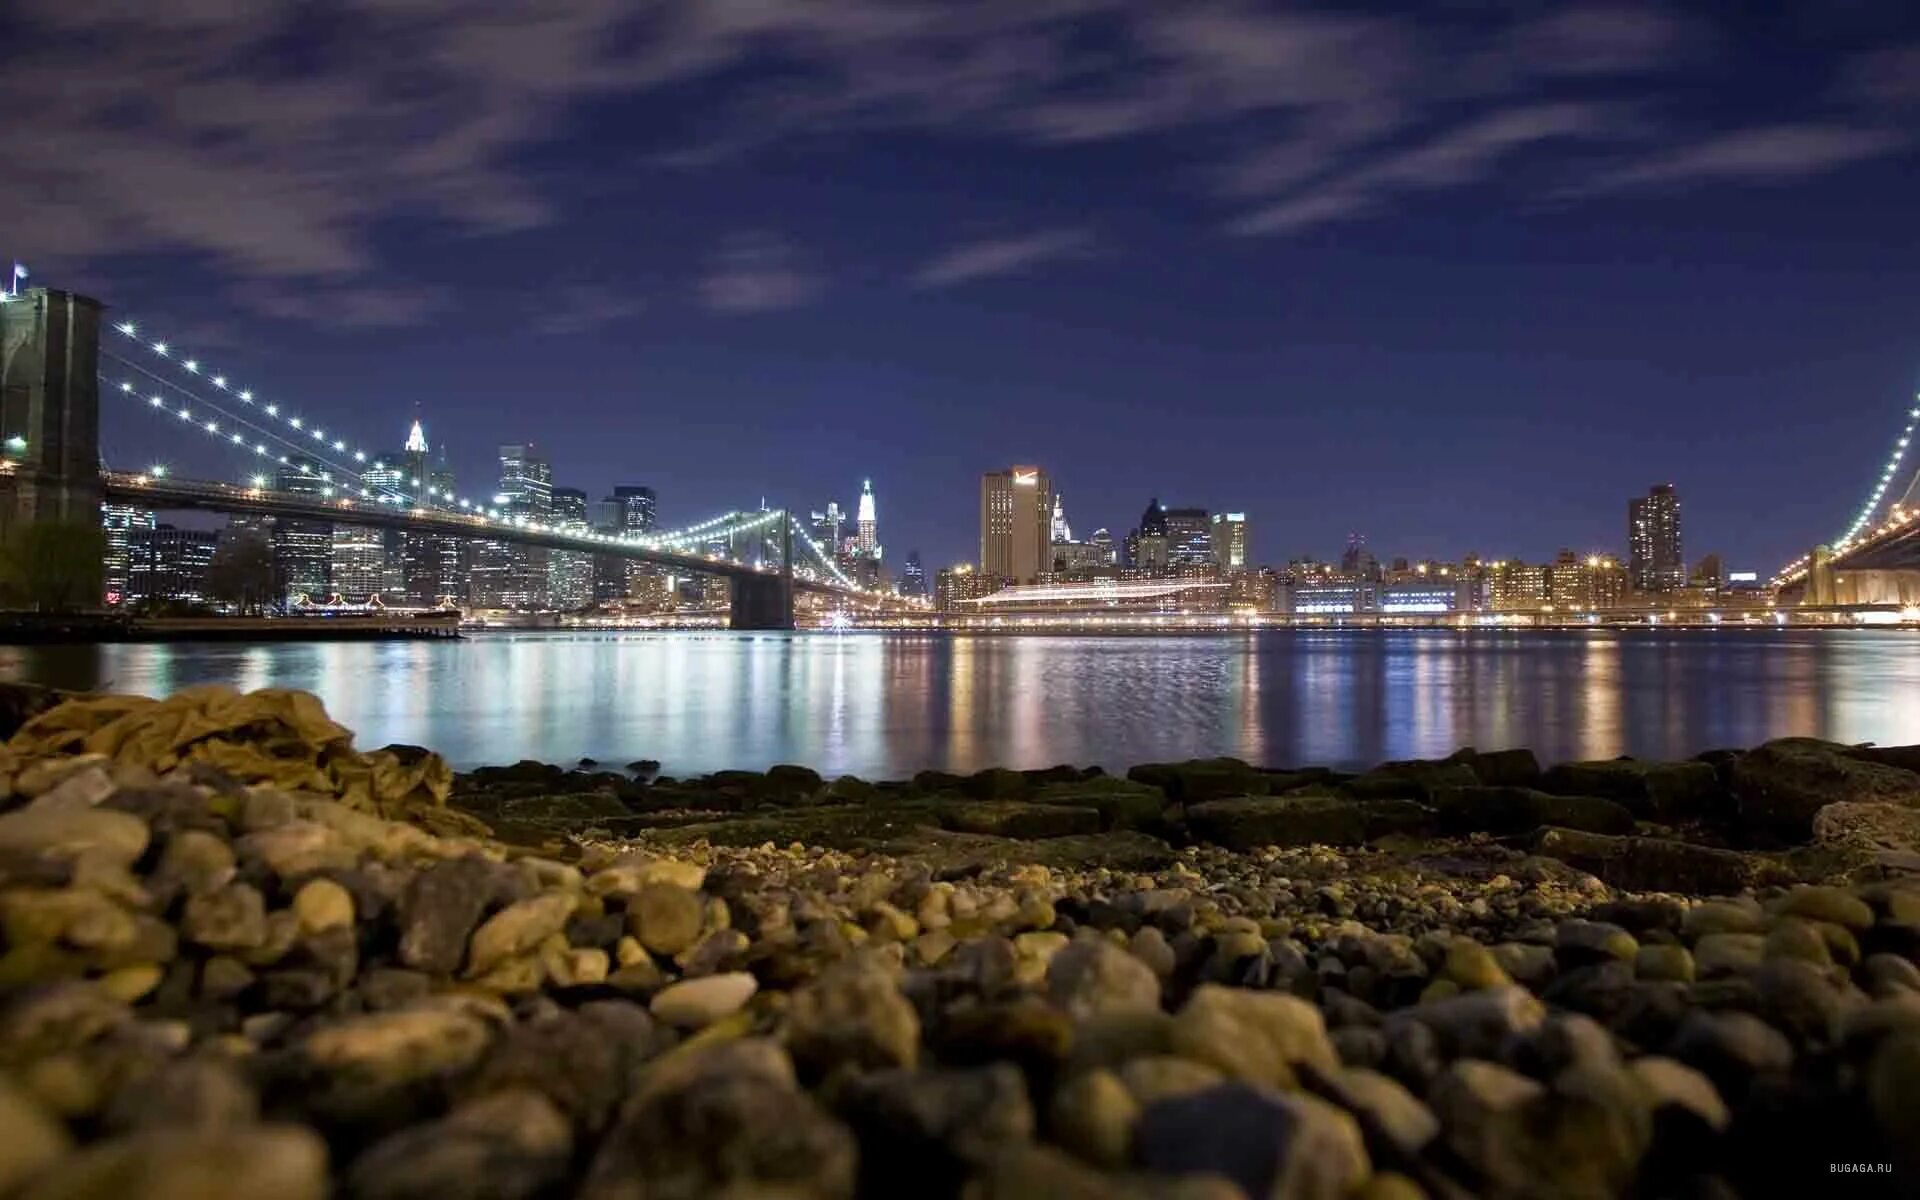 Фотографии размером 1024 2048 пикселей сохранили. Бруклинский мост Нью-Йорк ночью. Бруклинский мост панорама. Пусан мост Нью-Йорк. Ночной Нью-Йорк Манхэттен.